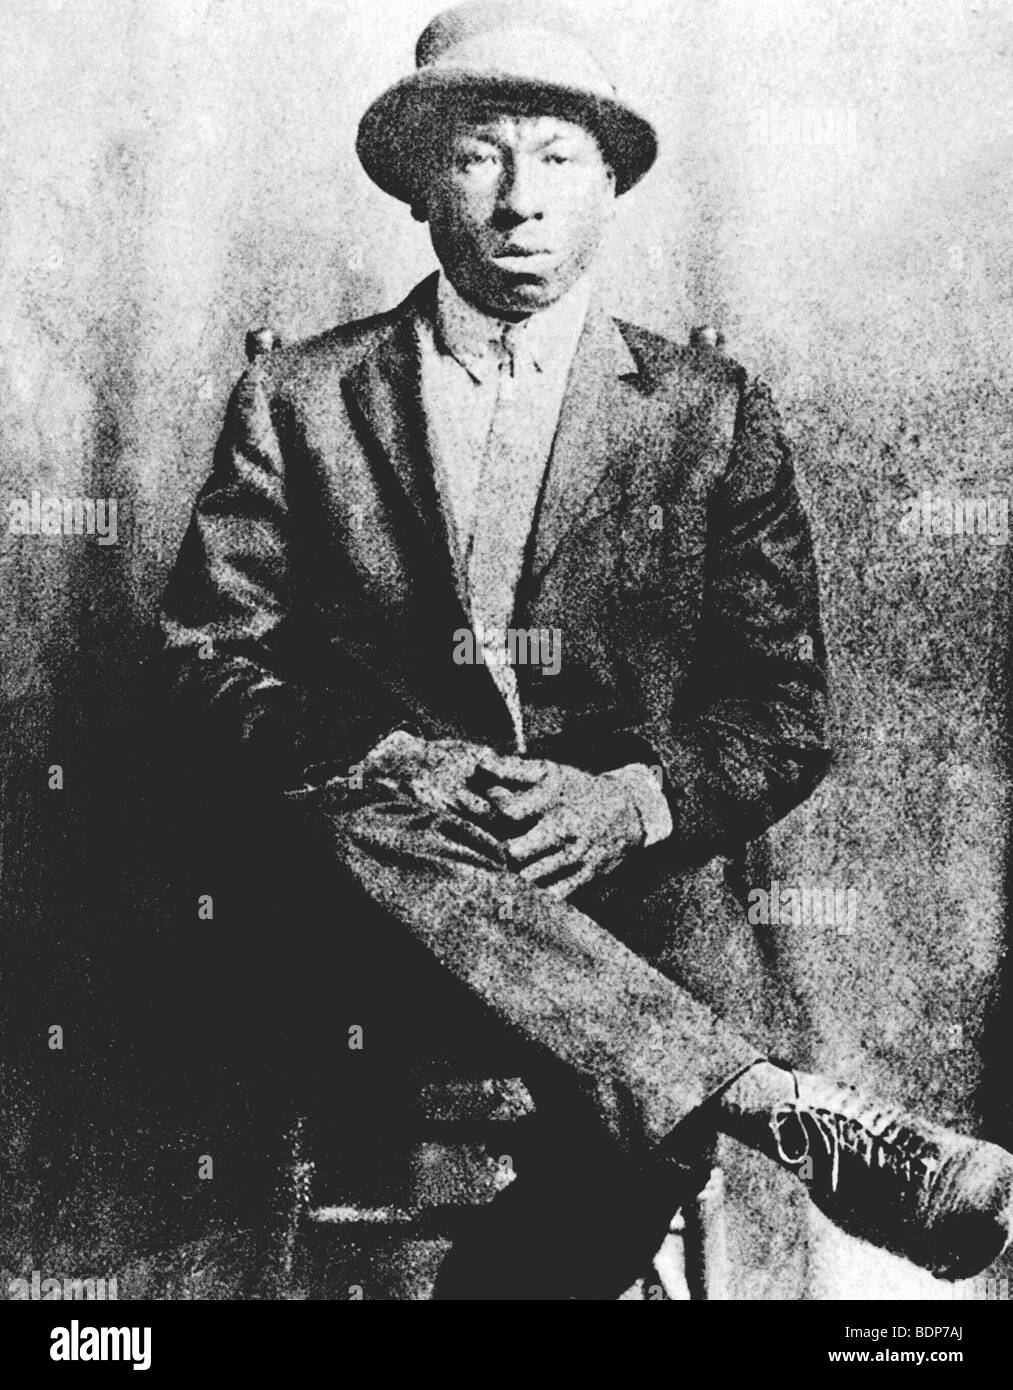 Tommy Johnson - Le musicien de blues américain (1901-70) Banque D'Images